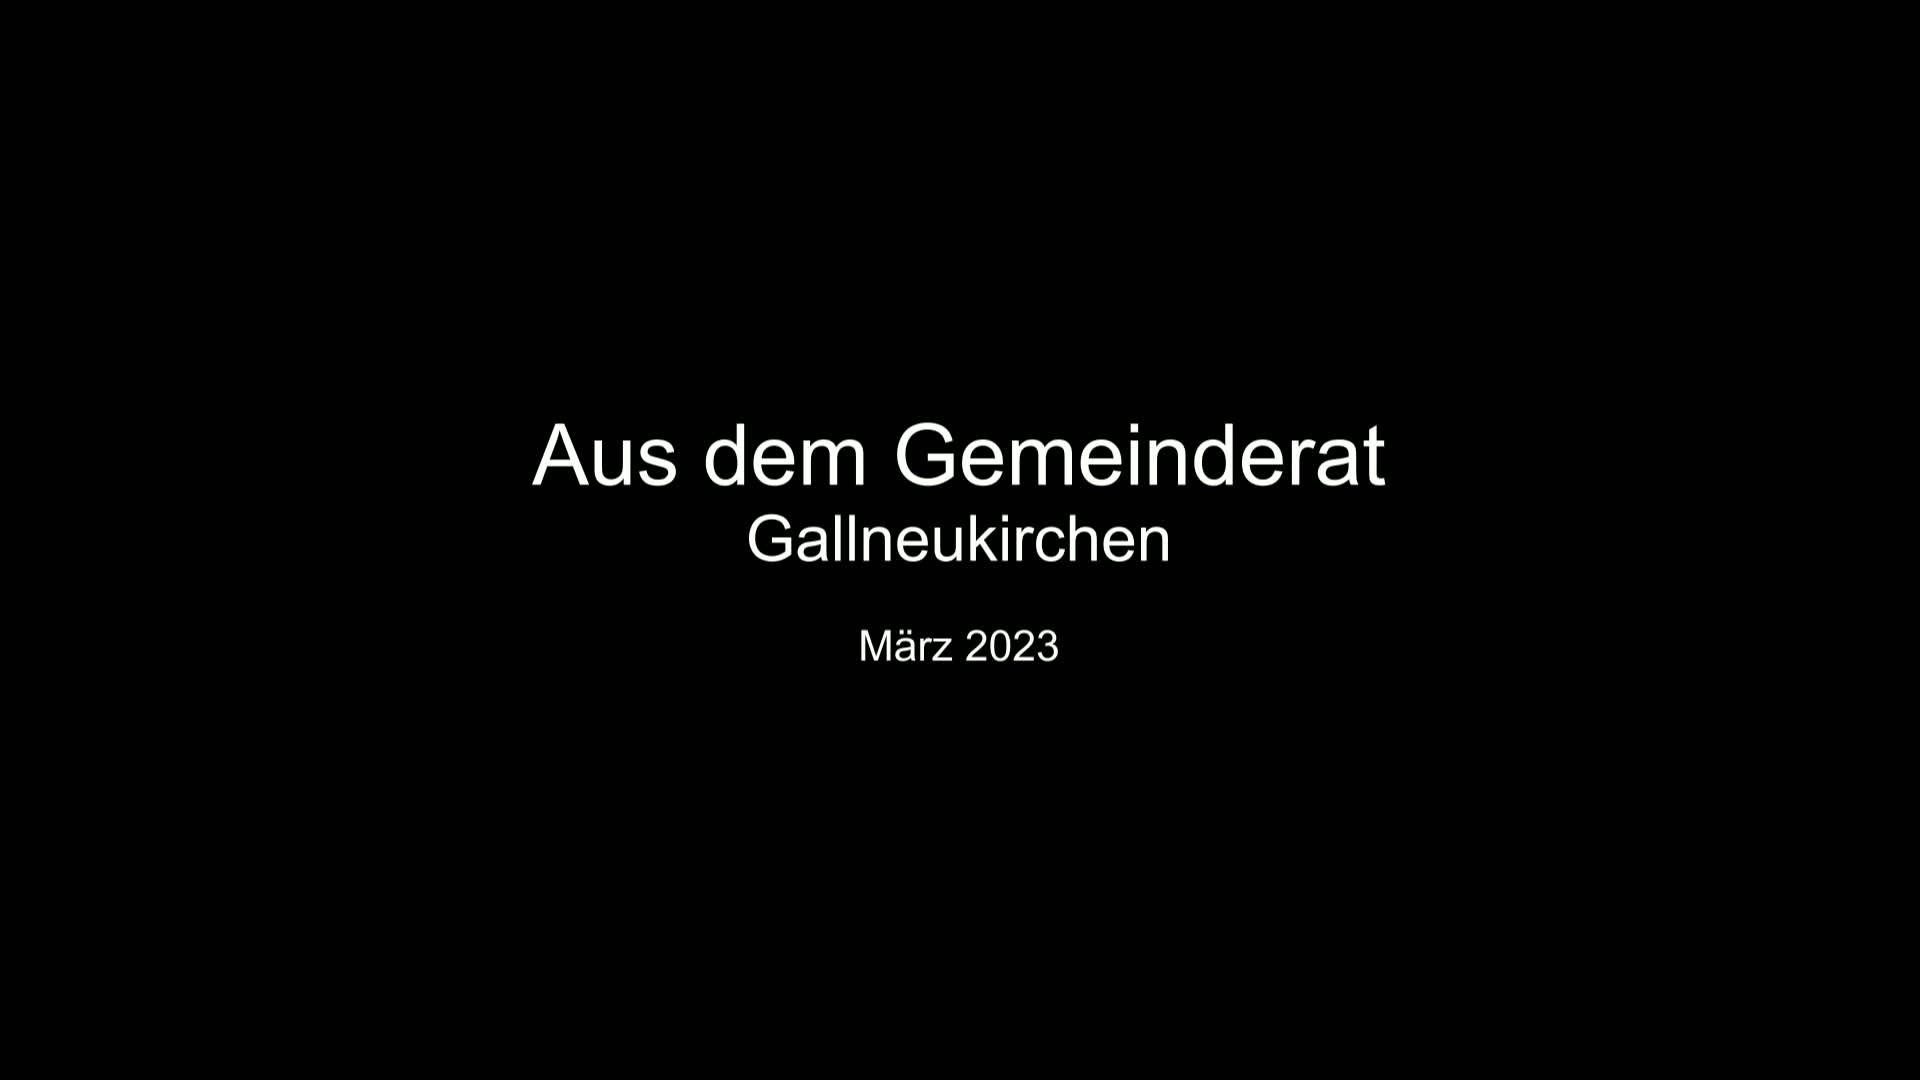 Aus dem Gemeinderat Gallneukirchen - März 23